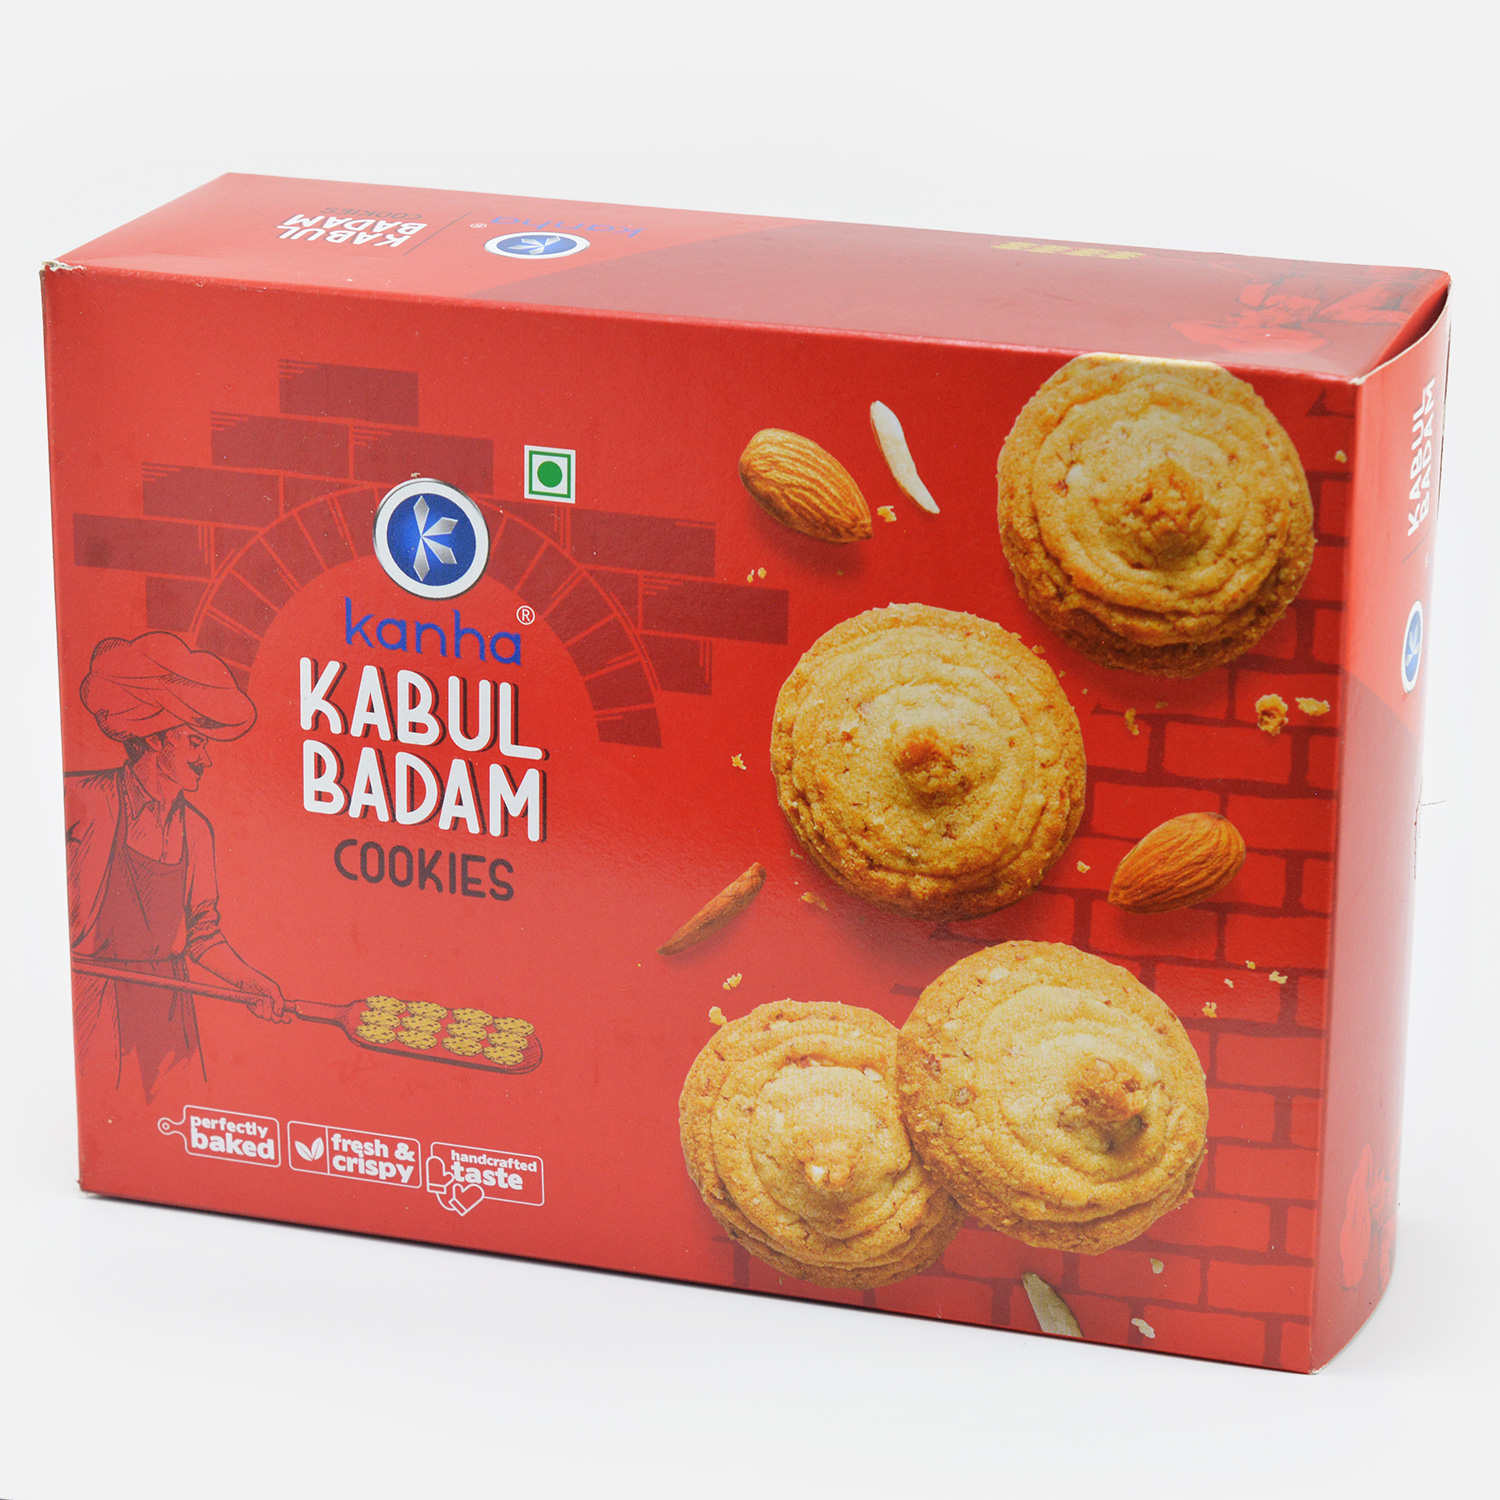 Kanha Brand Kabul Badam Special Cookies